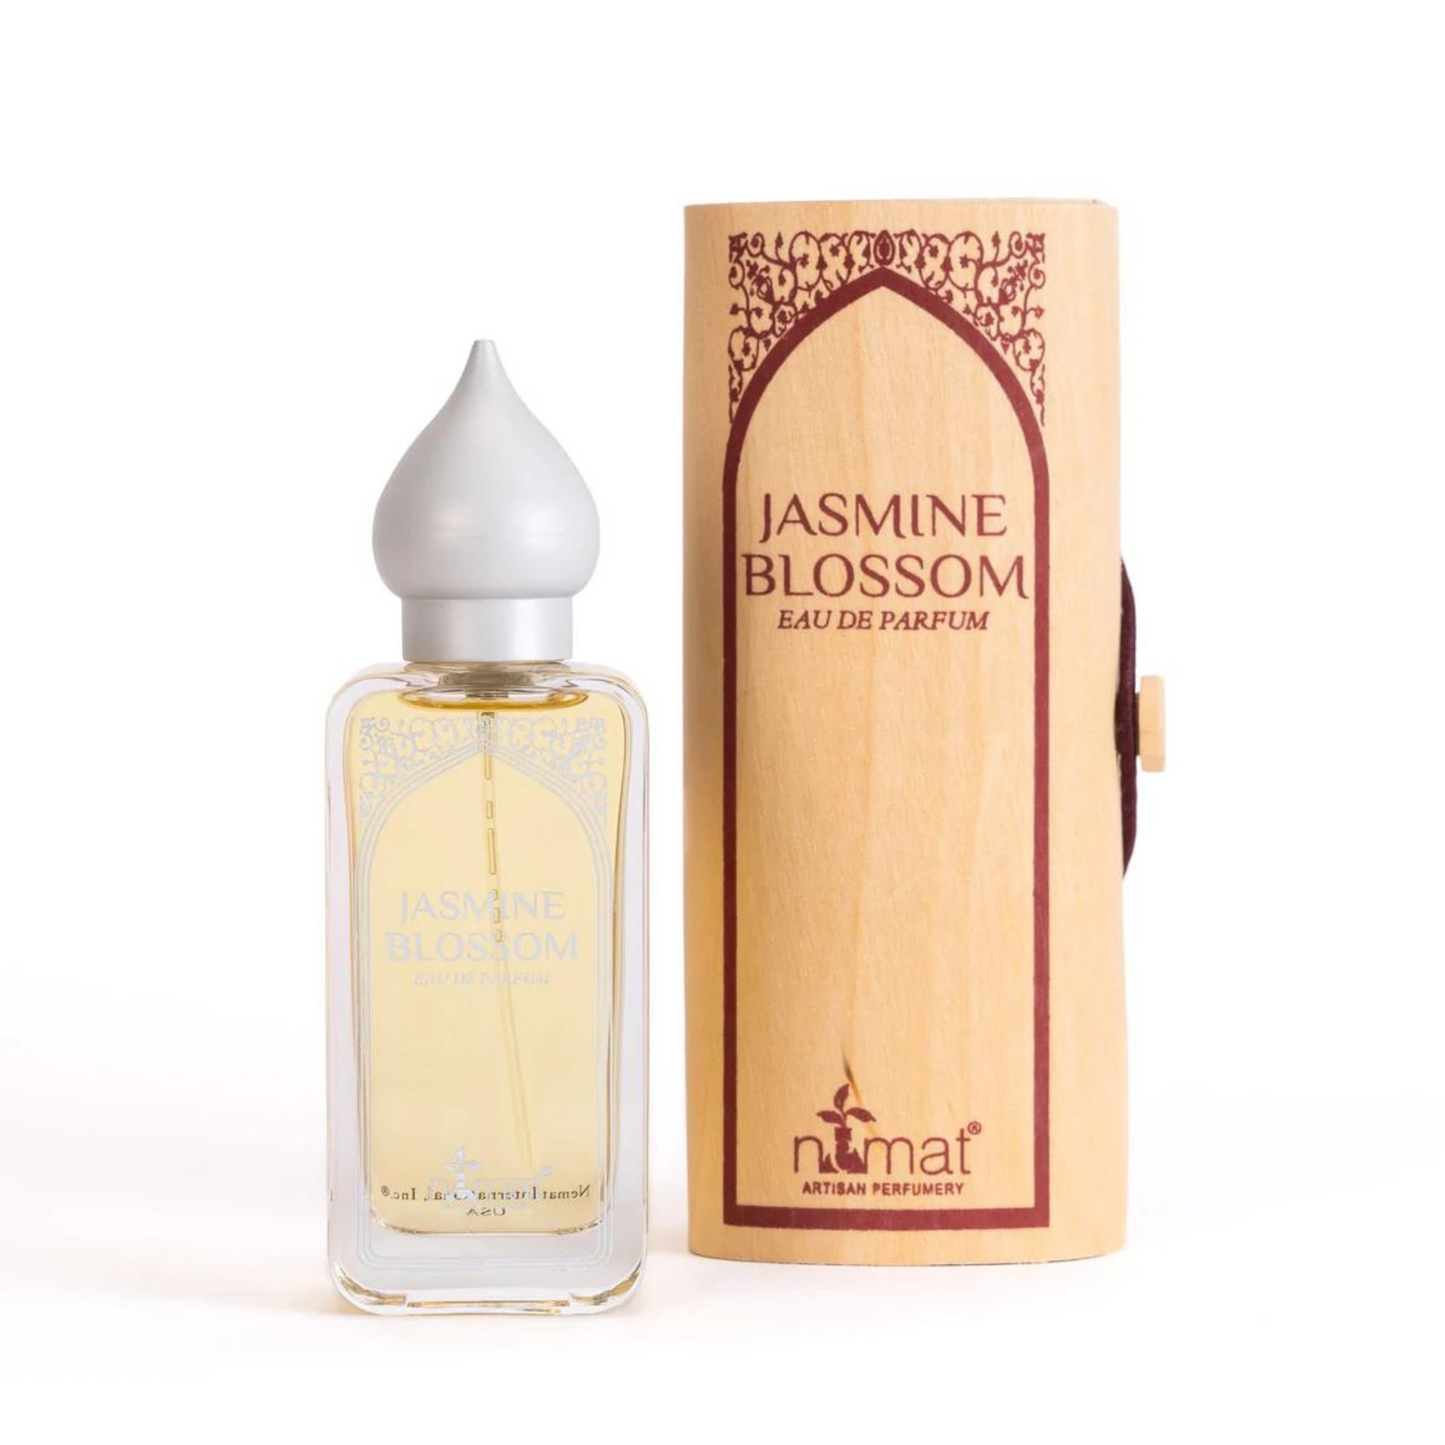 Primary Image of Nemat International, Inc Jasmine Blossom Eau De Parfum (50 ml)